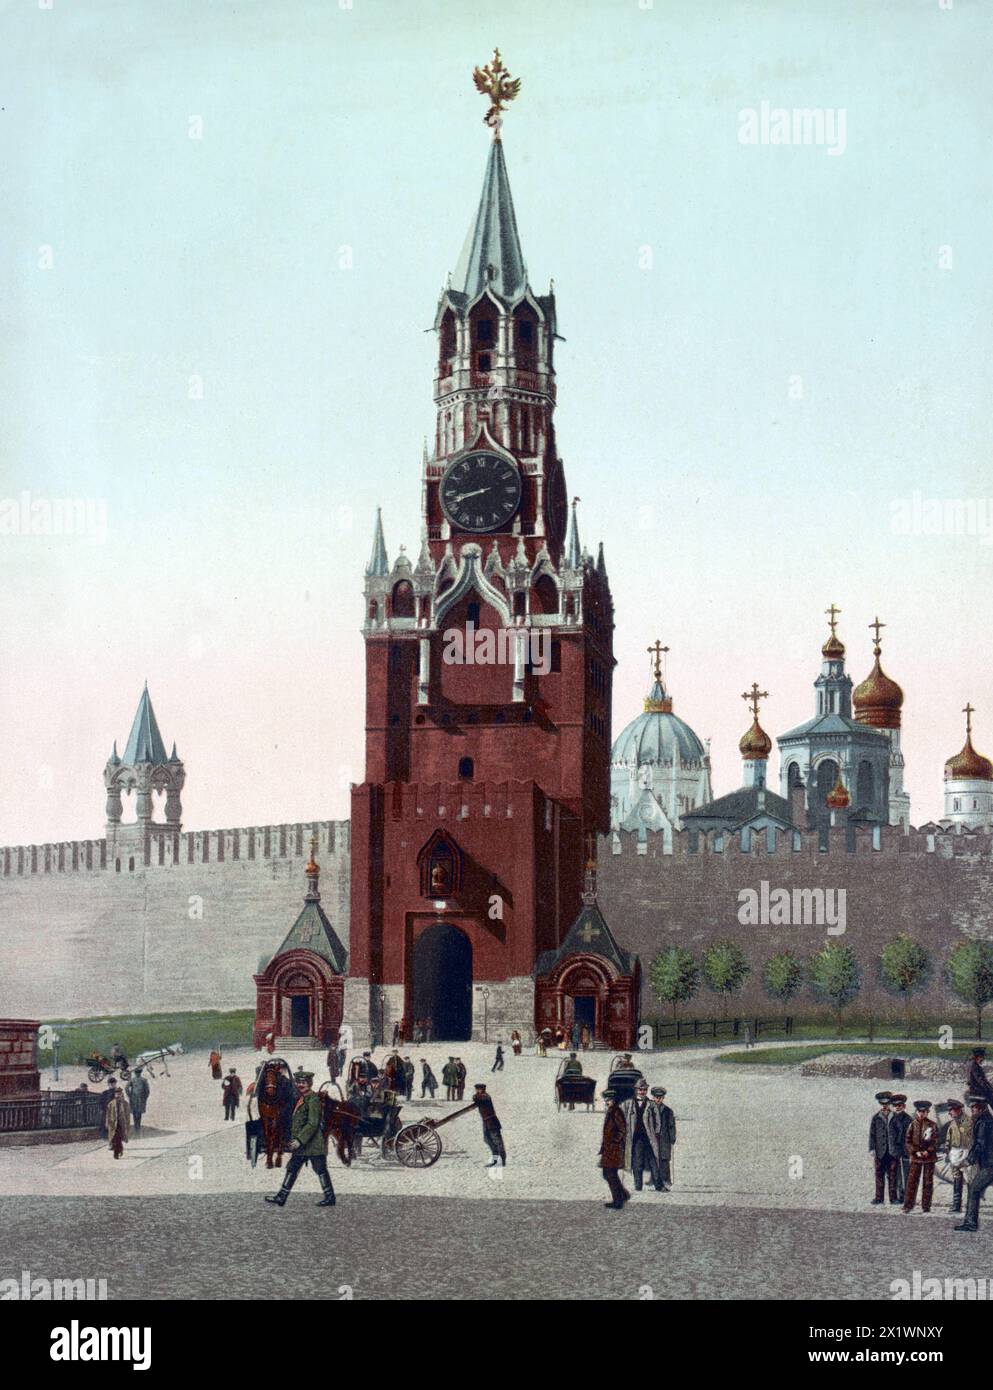 Erlöserturm, Wachturm des Kreml, Moskau, Russland, UM 1890, Historisch, digital restaurierte Reproduktion von einer Vorlage aus dem 19. Jahrhundert Foto Stock